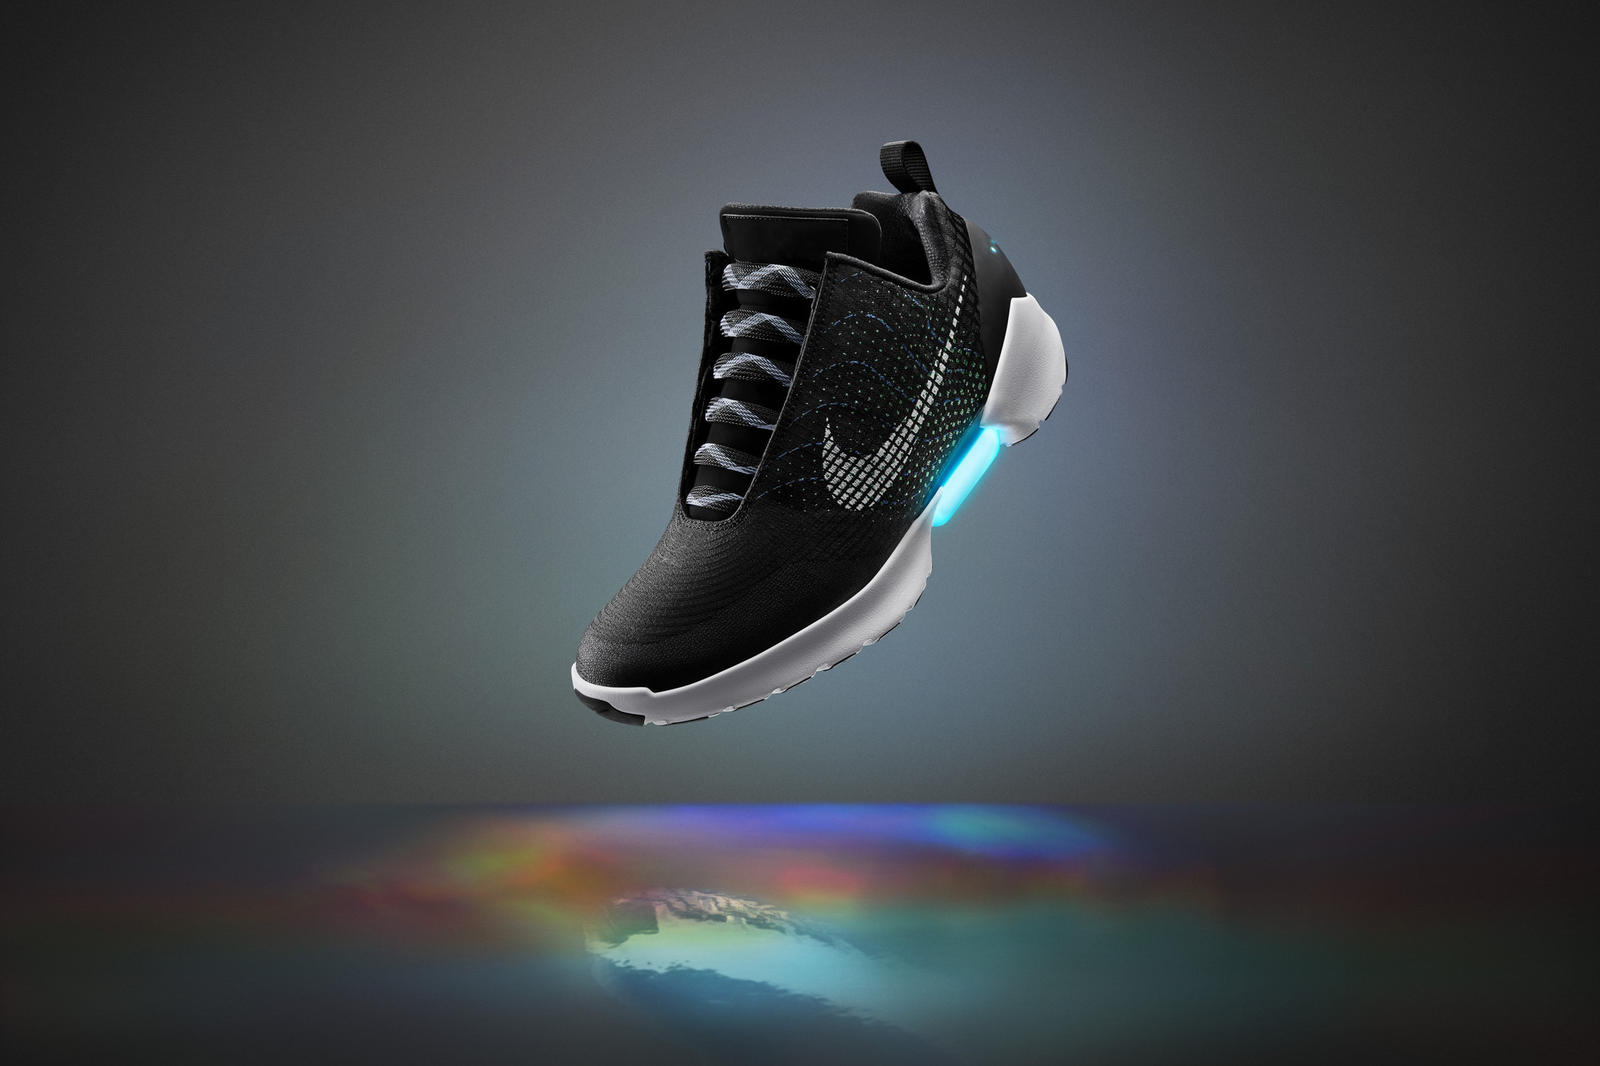 self-lacing sneakers to run you $720 